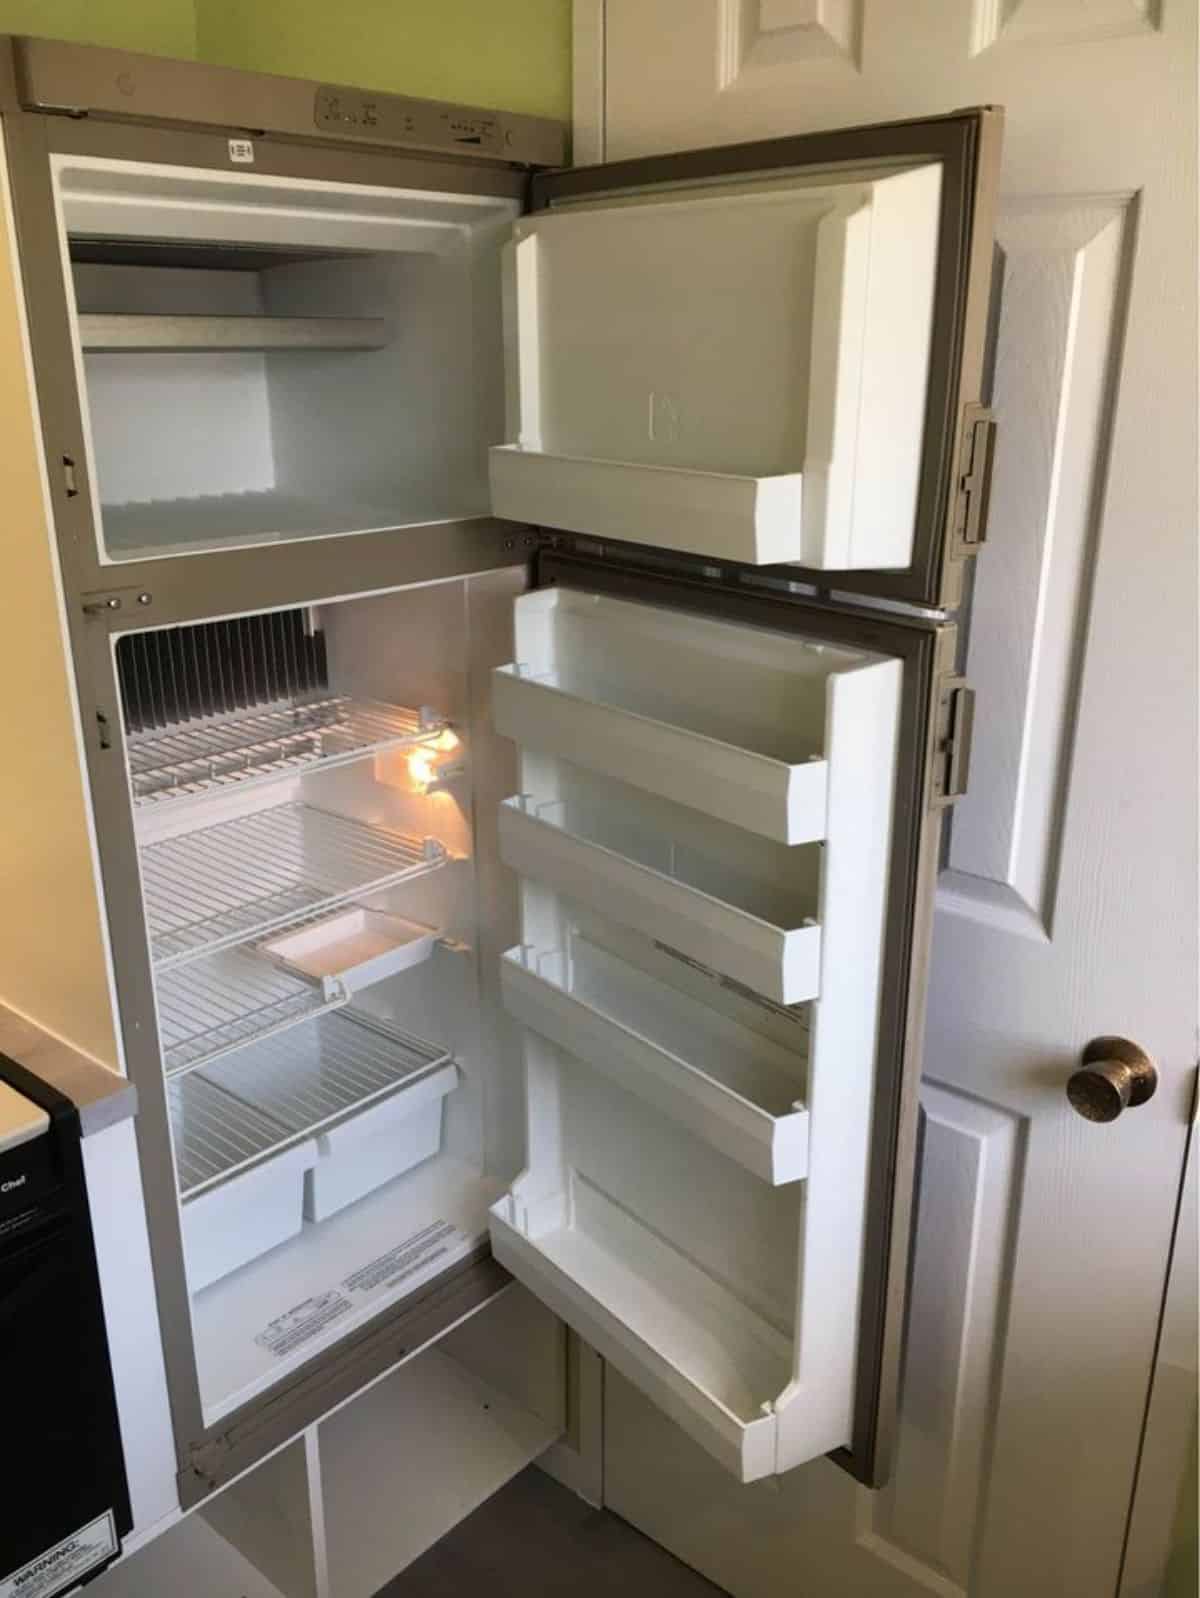 Double door refrigerator in kitchen